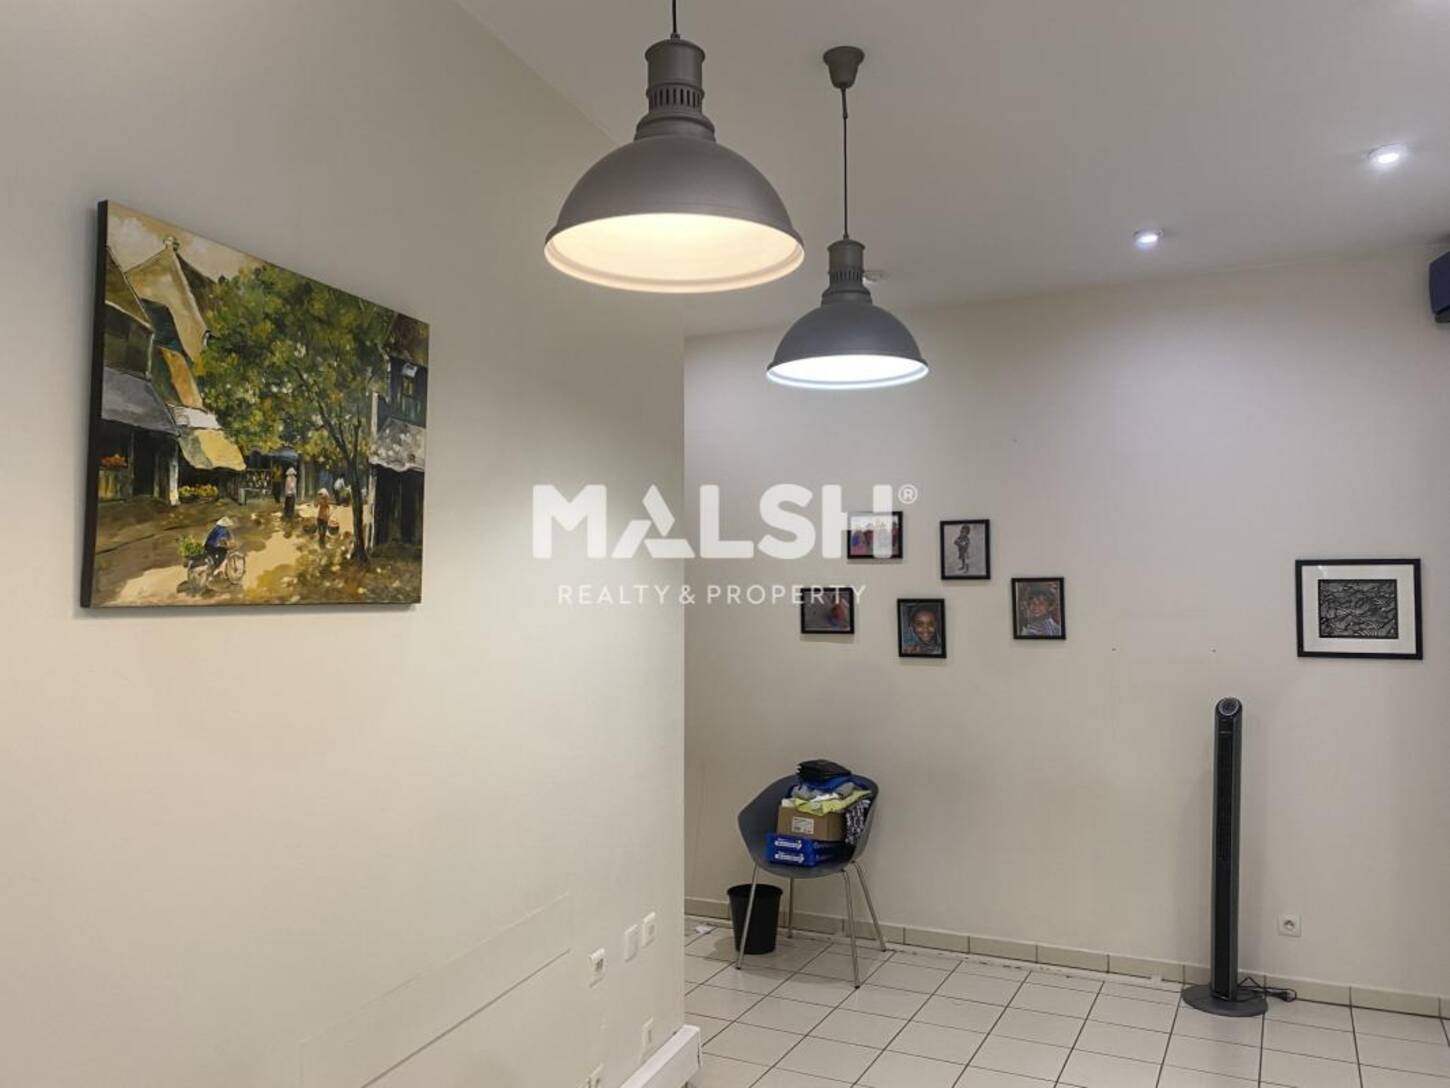 MALSH Realty & Property - Bureau - Lyon - Presqu'île - Lyon 2 - 2